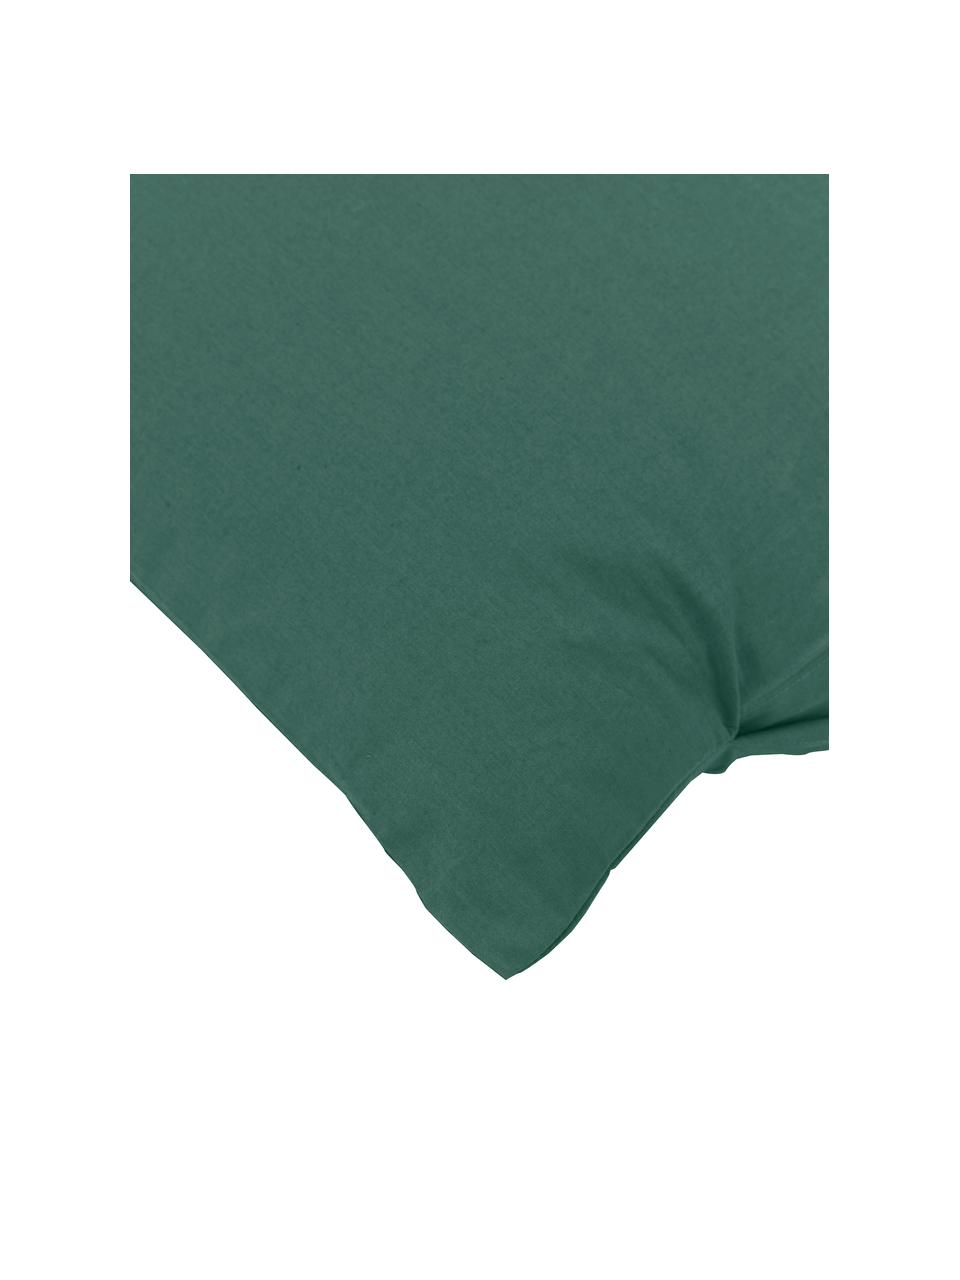 Poszewka na poduszkę z perkalu bawełnianego Elsie, 2 szt., Ciemny zielony, S 40 x D 80 cm